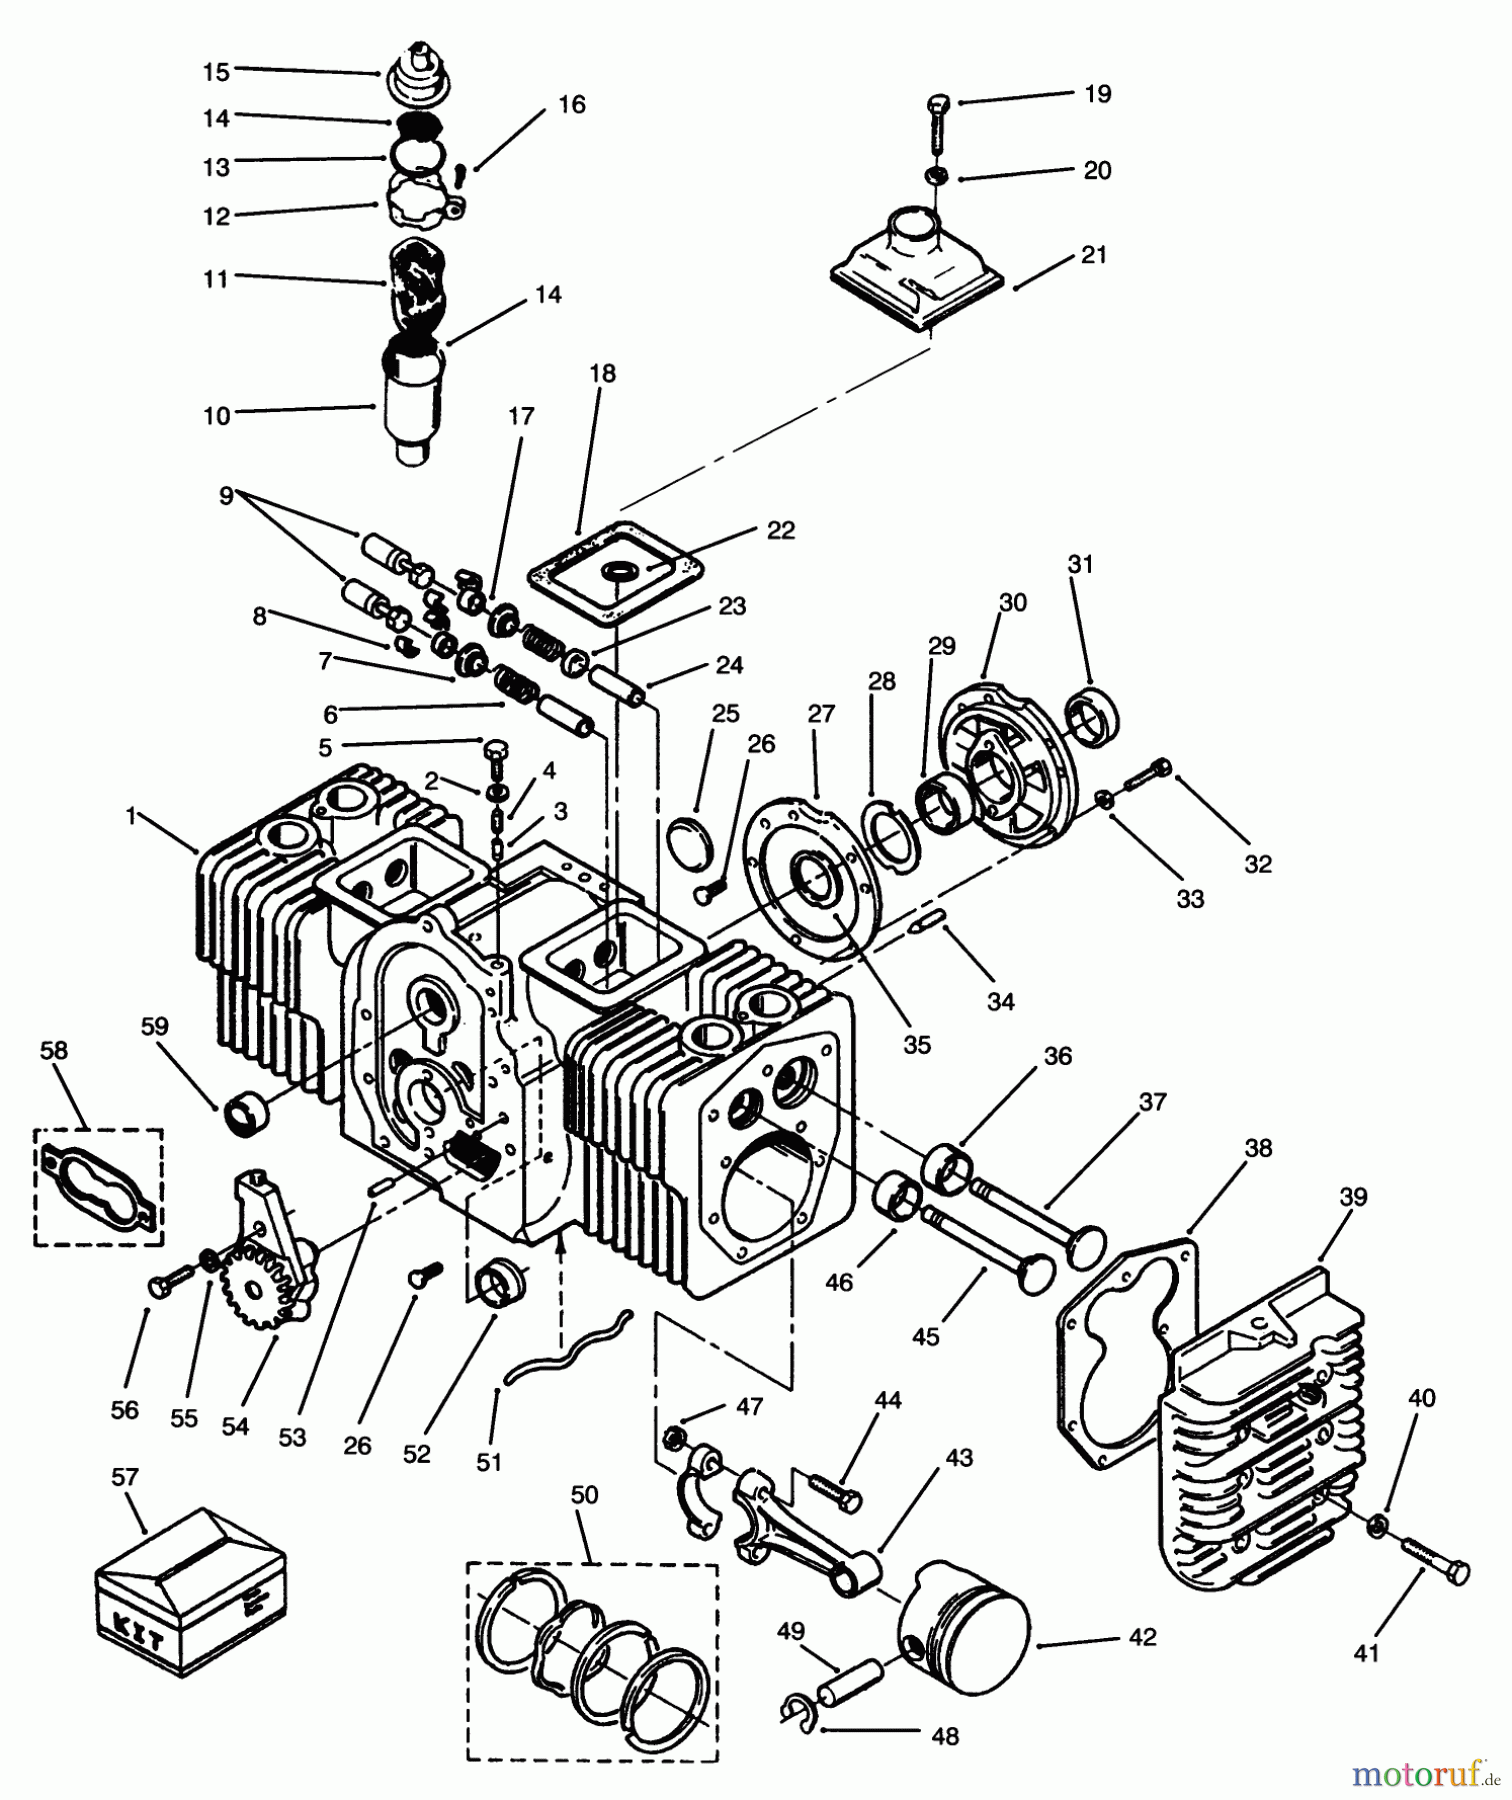  Toro Neu Mowers, Lawn & Garden Tractor Seite 1 73520 (520-H) - Toro 520-H Garden Tractor, 1994 (4900001-4999999) ENGINE CYLINDER BLOCK